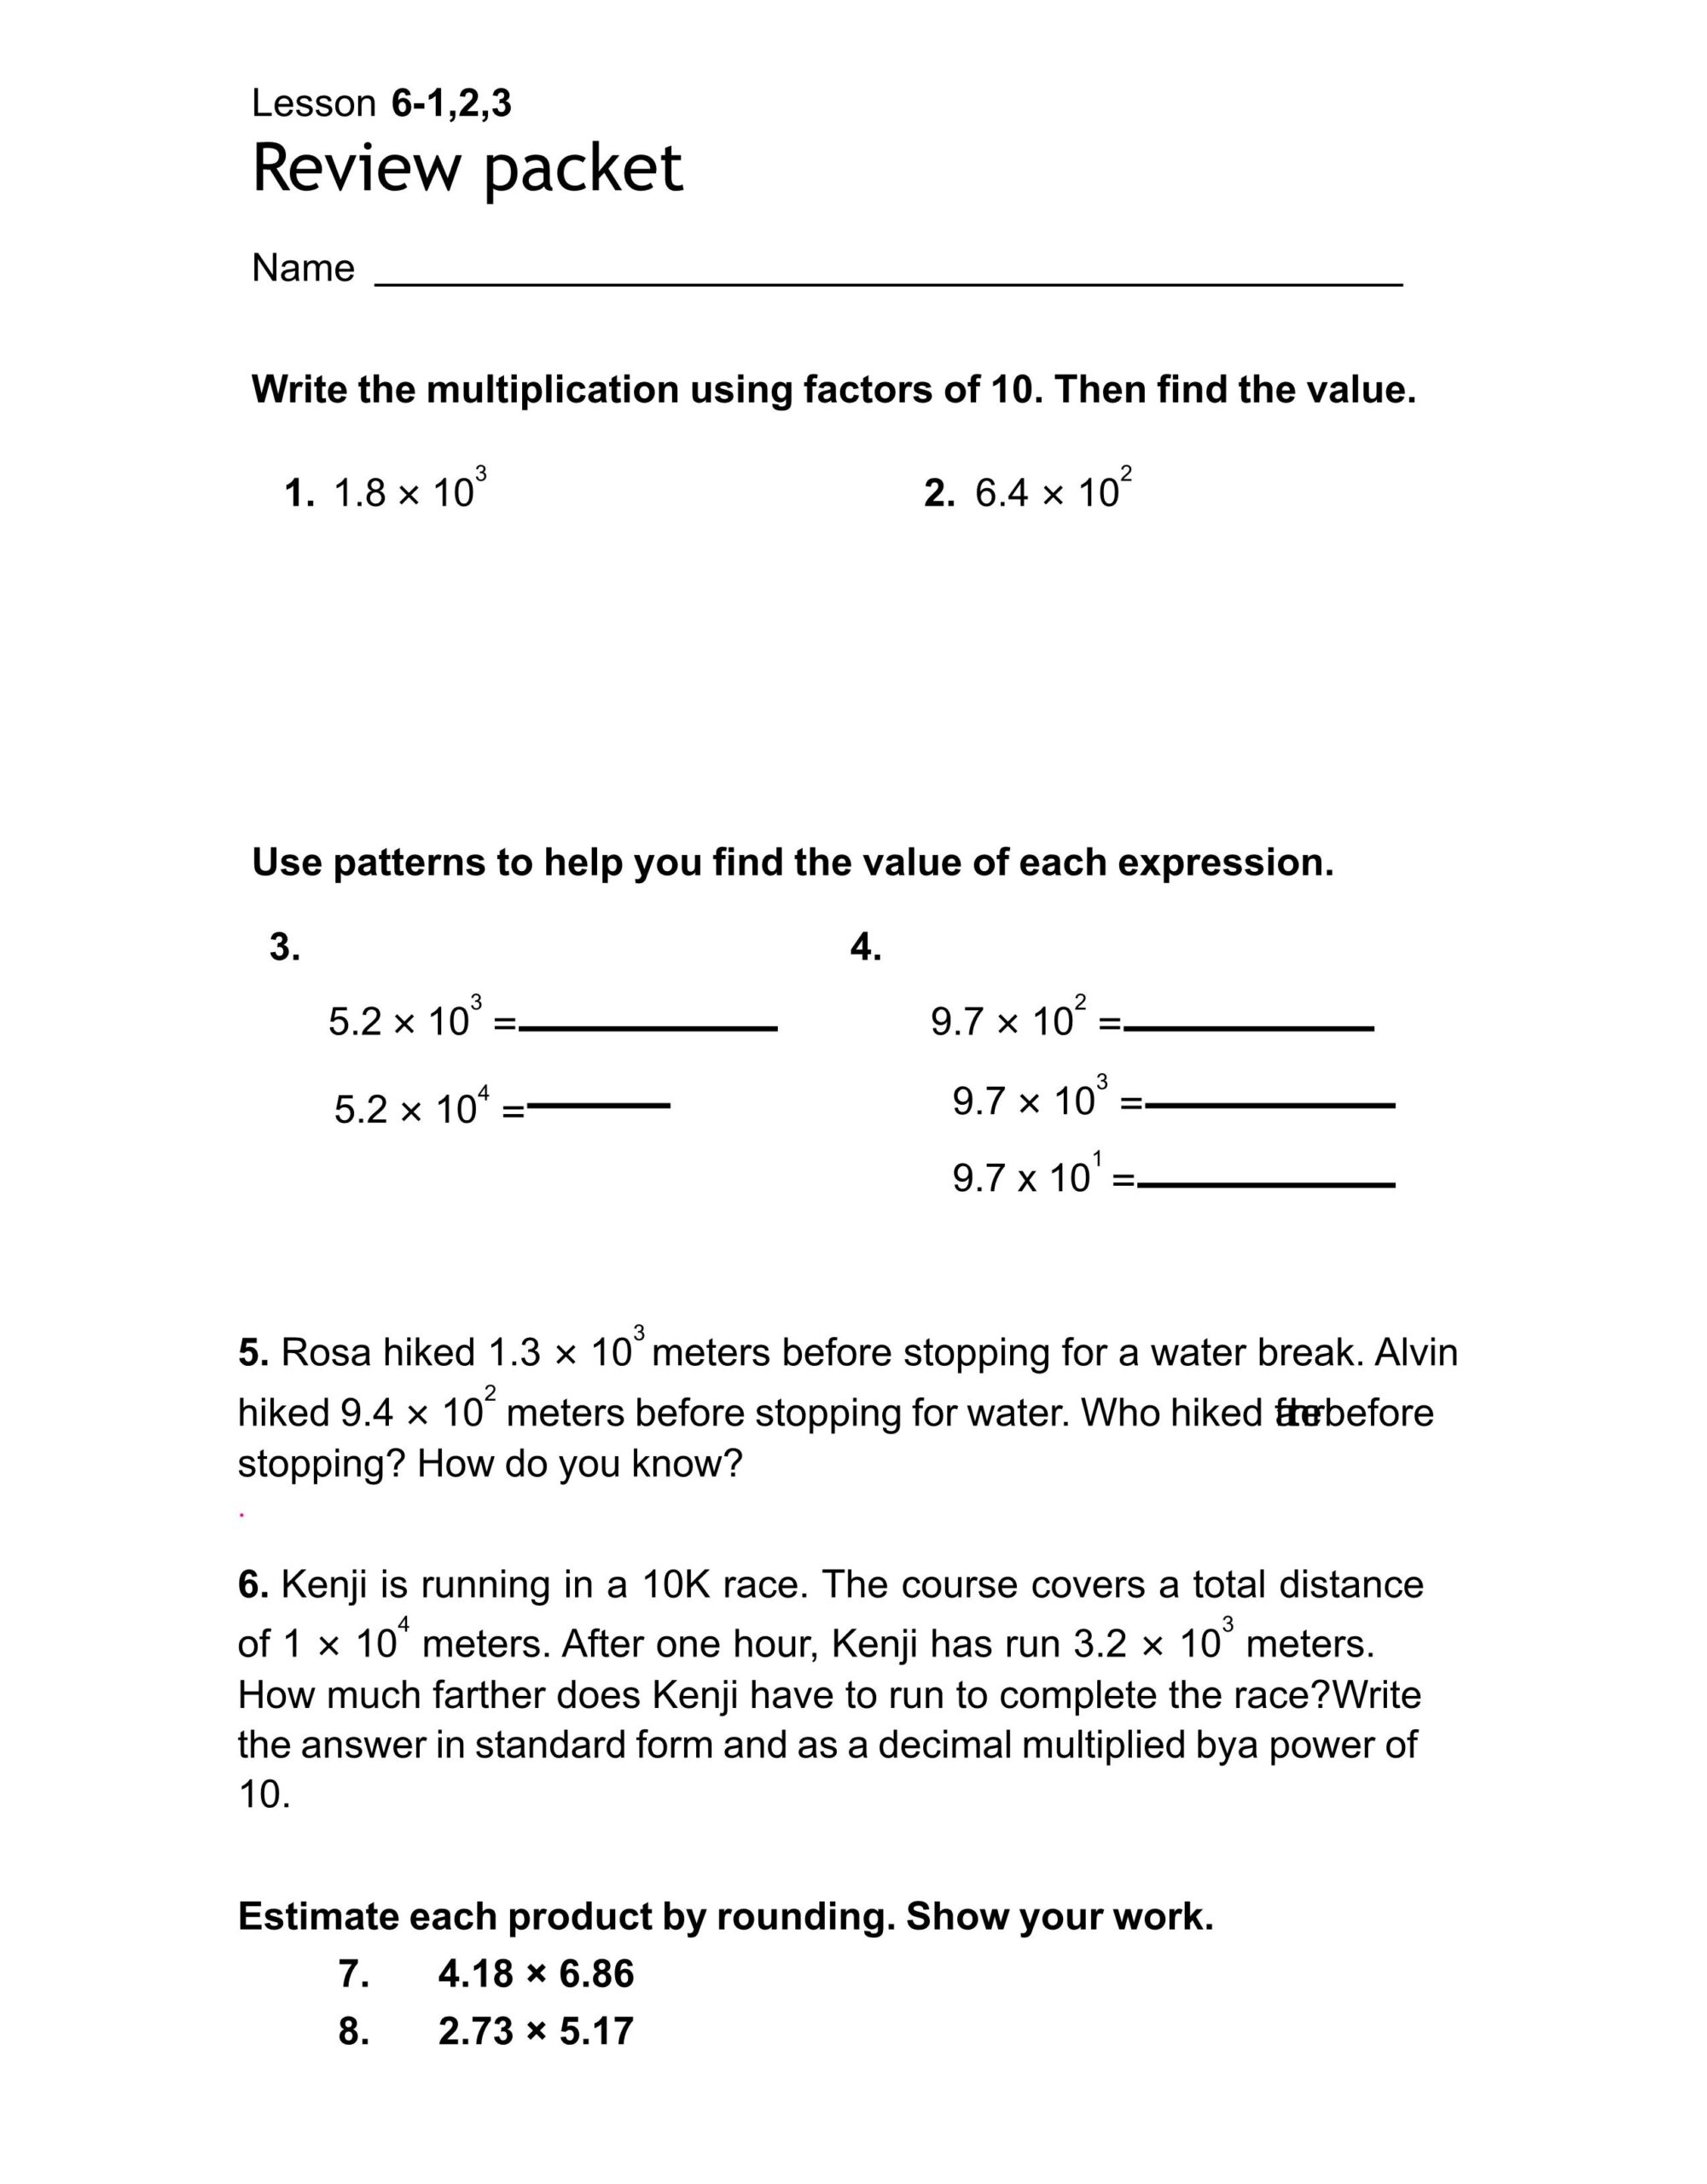 أوراق عمل Lesson 6 -1-2-3 الرياضيات المتكاملة الصف الخامس